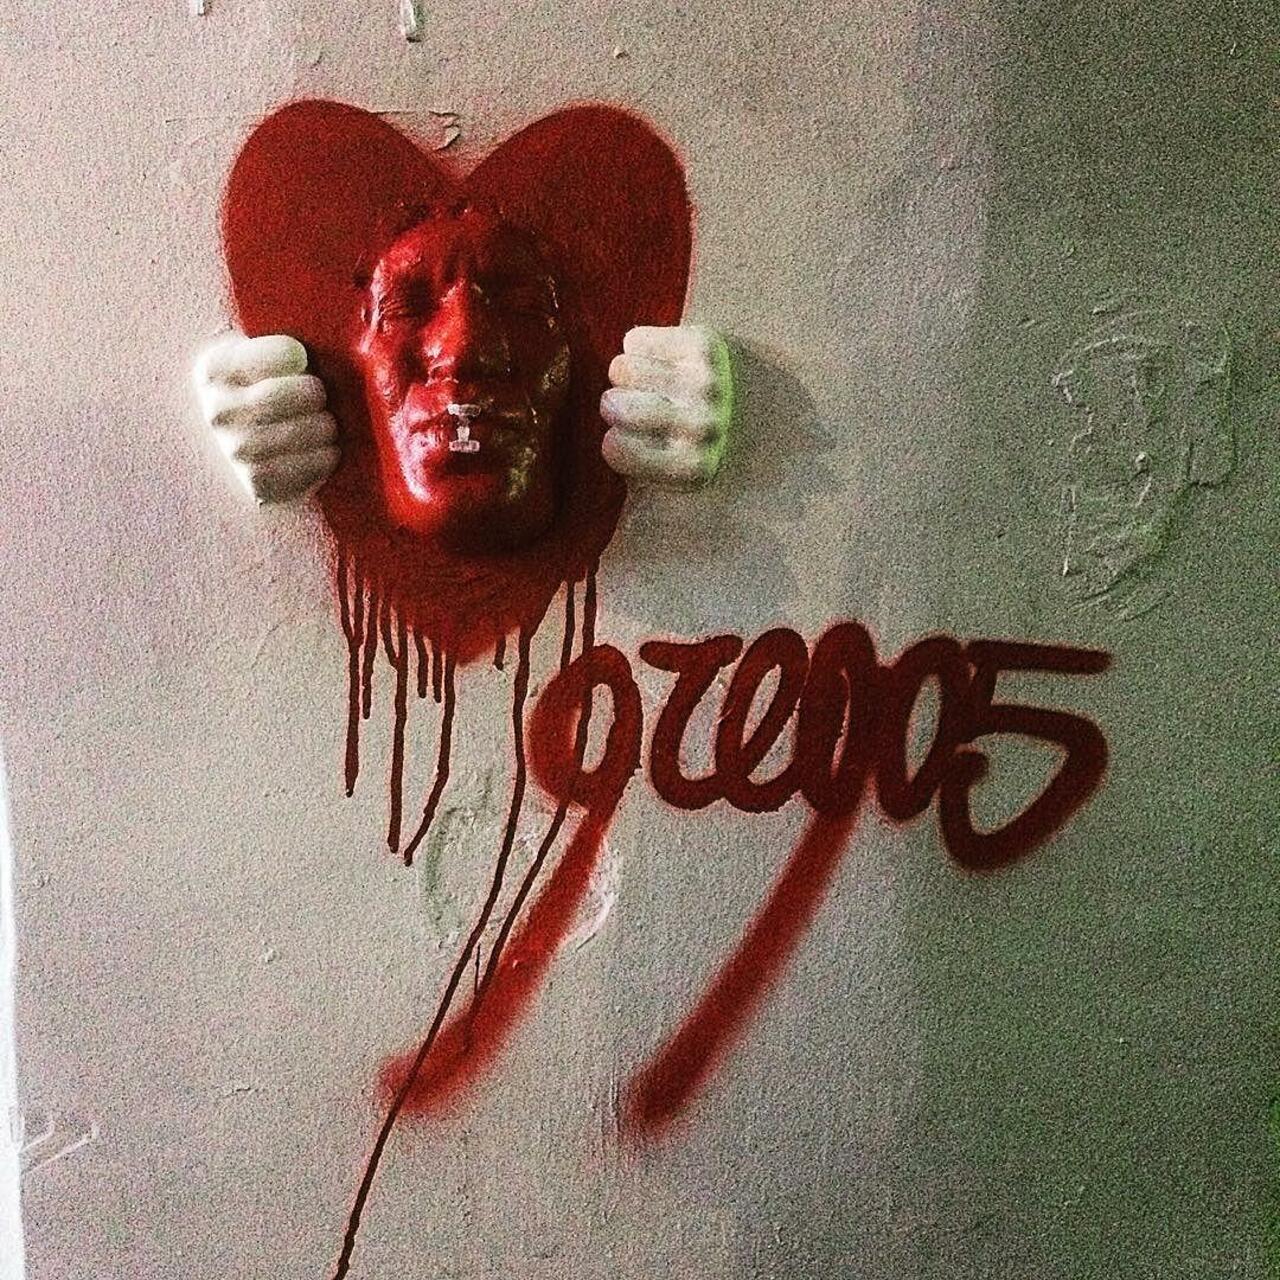 circumjacent_fr: #Paris #graffiti photo by julosteart http://ift.tt/1LuTwNY #StreetArt http://t.co/qvz0xiqnVE